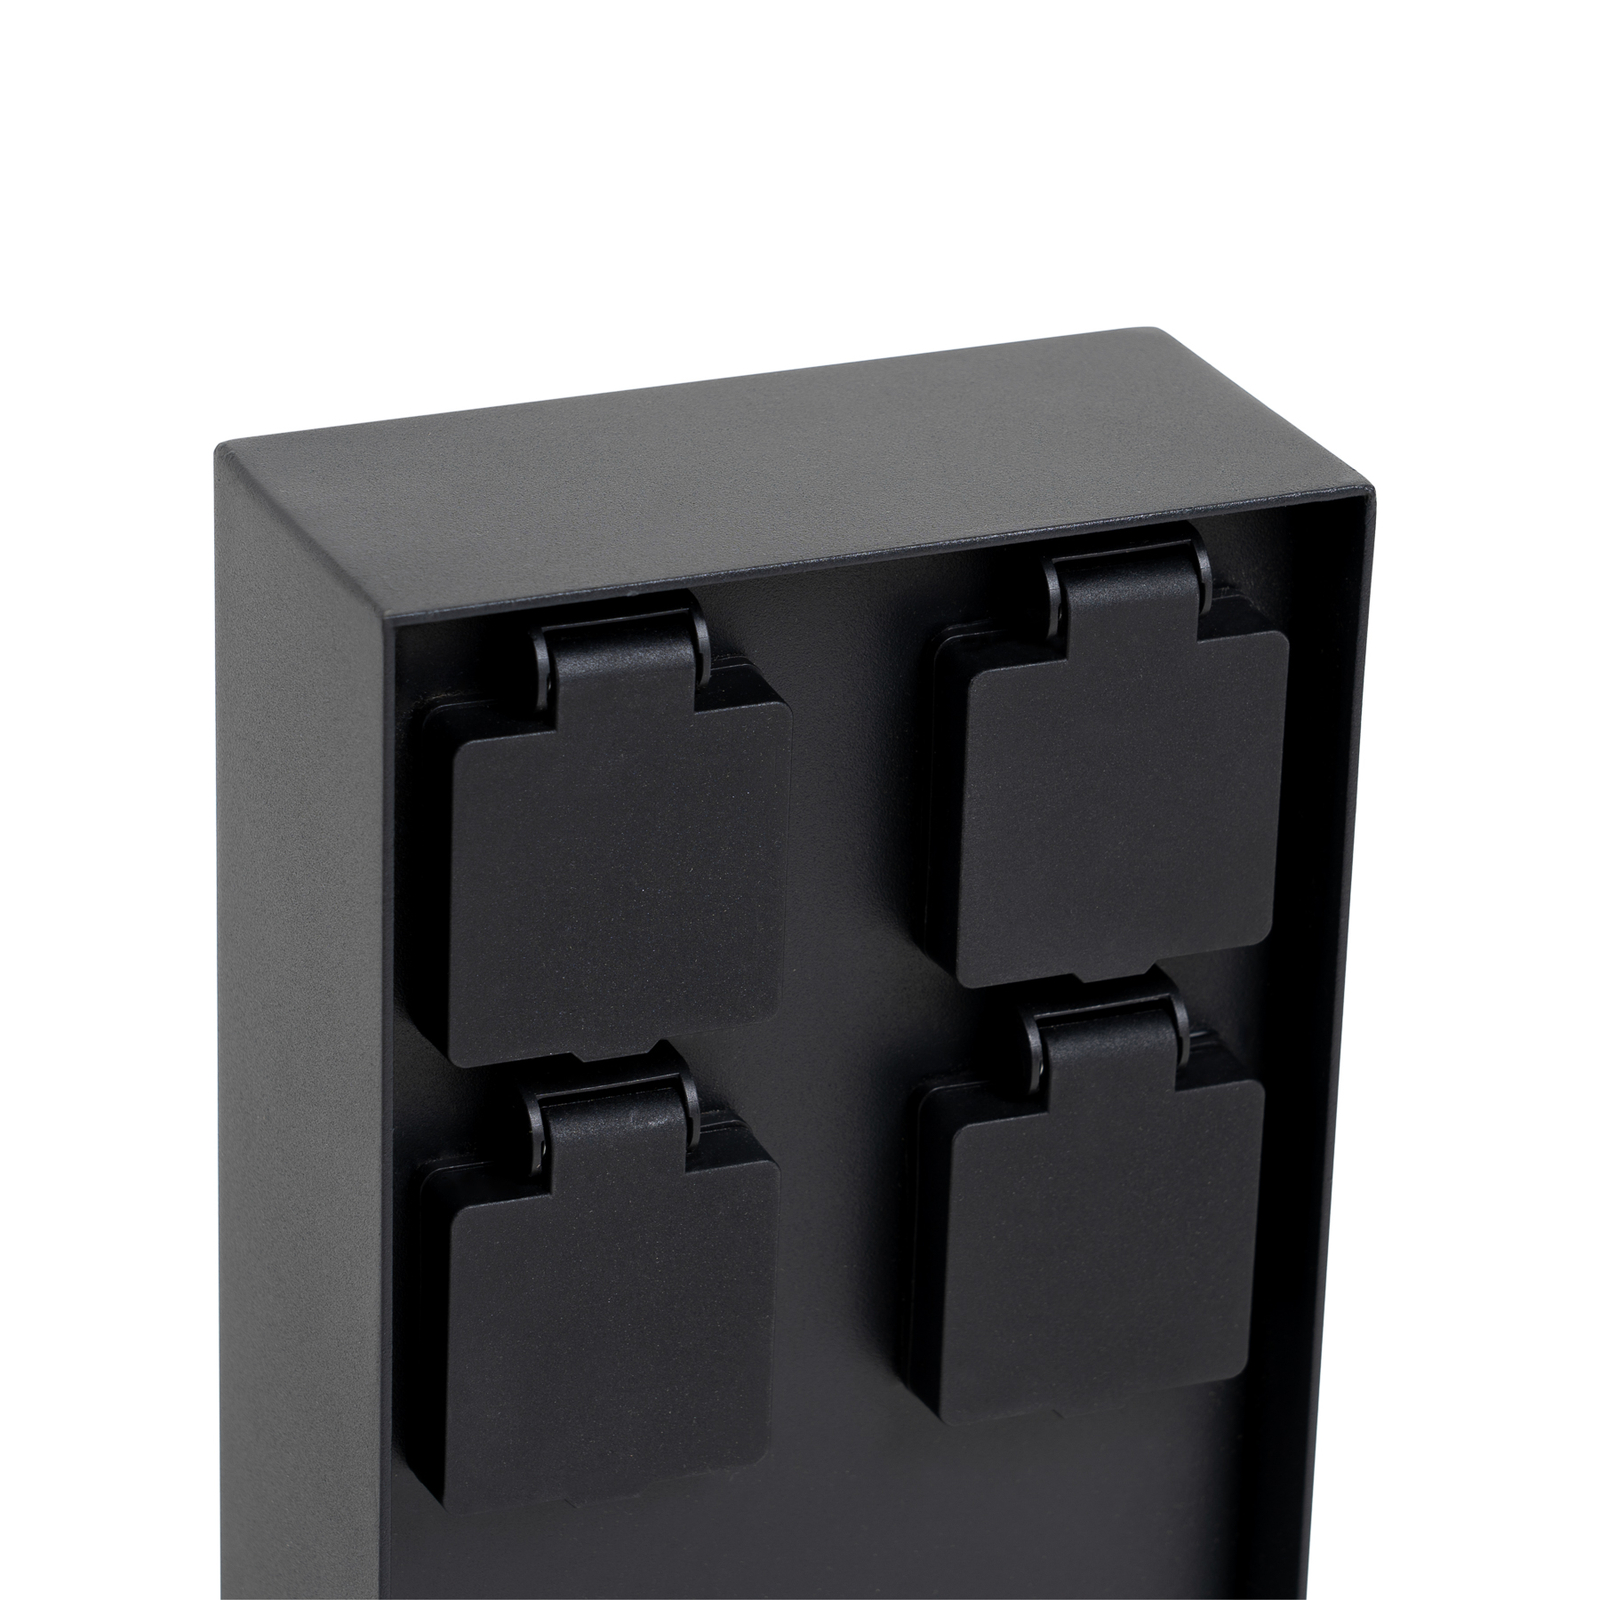 Prios Foranda energiezuil, 4 stuks, zwart, 23 cm